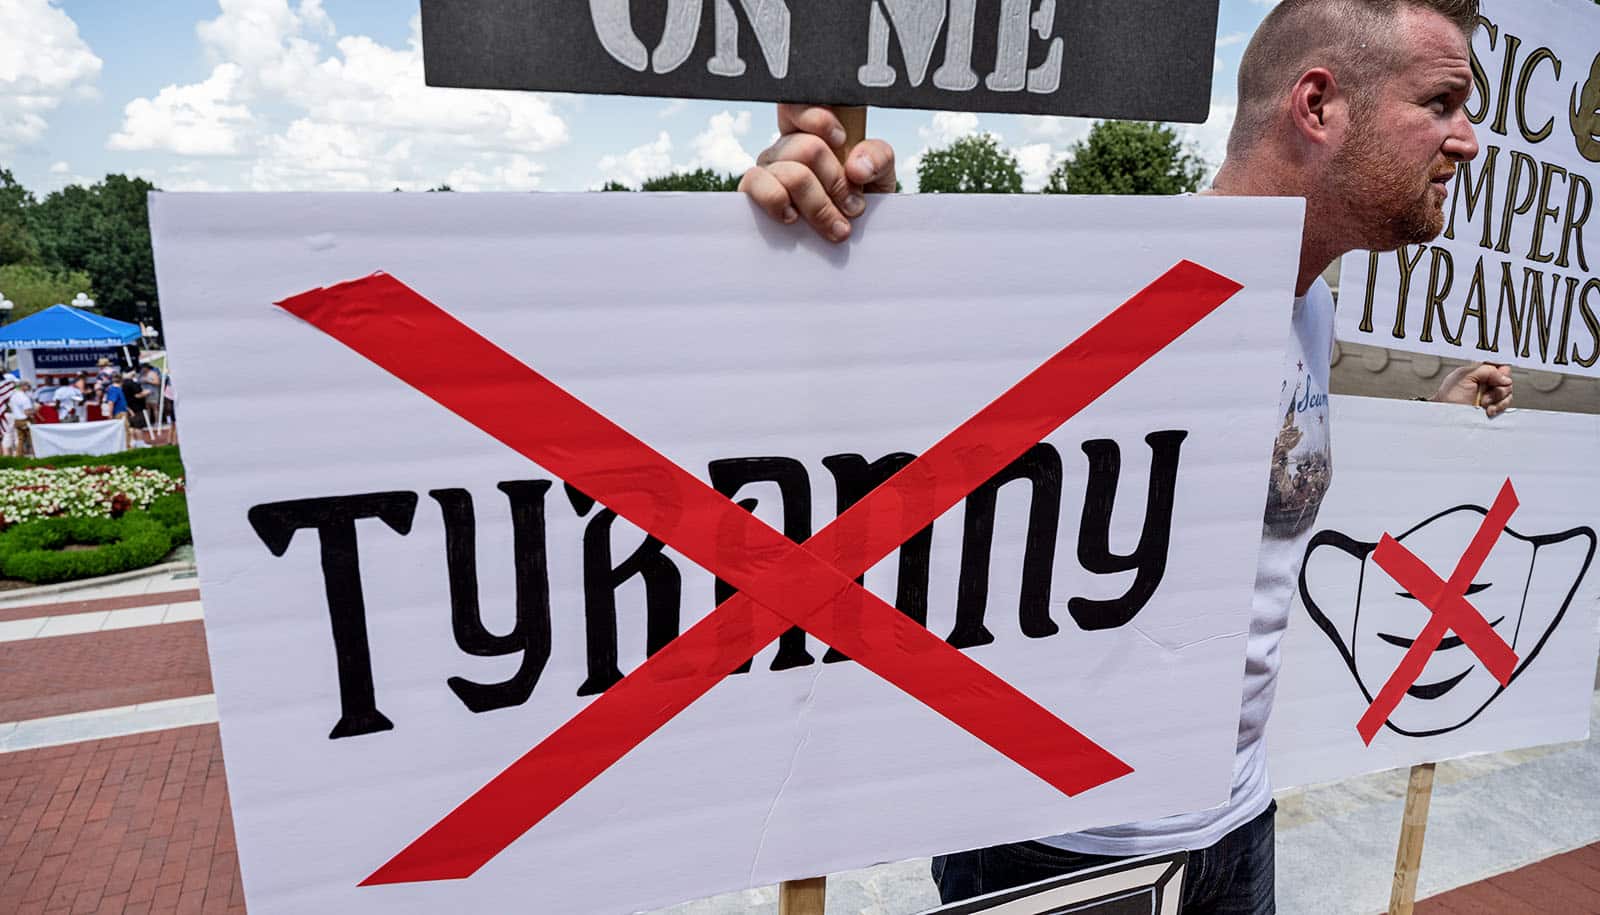 Mann hält Maske und "Tyrannei"-Schilder mit Bürokratie Xs